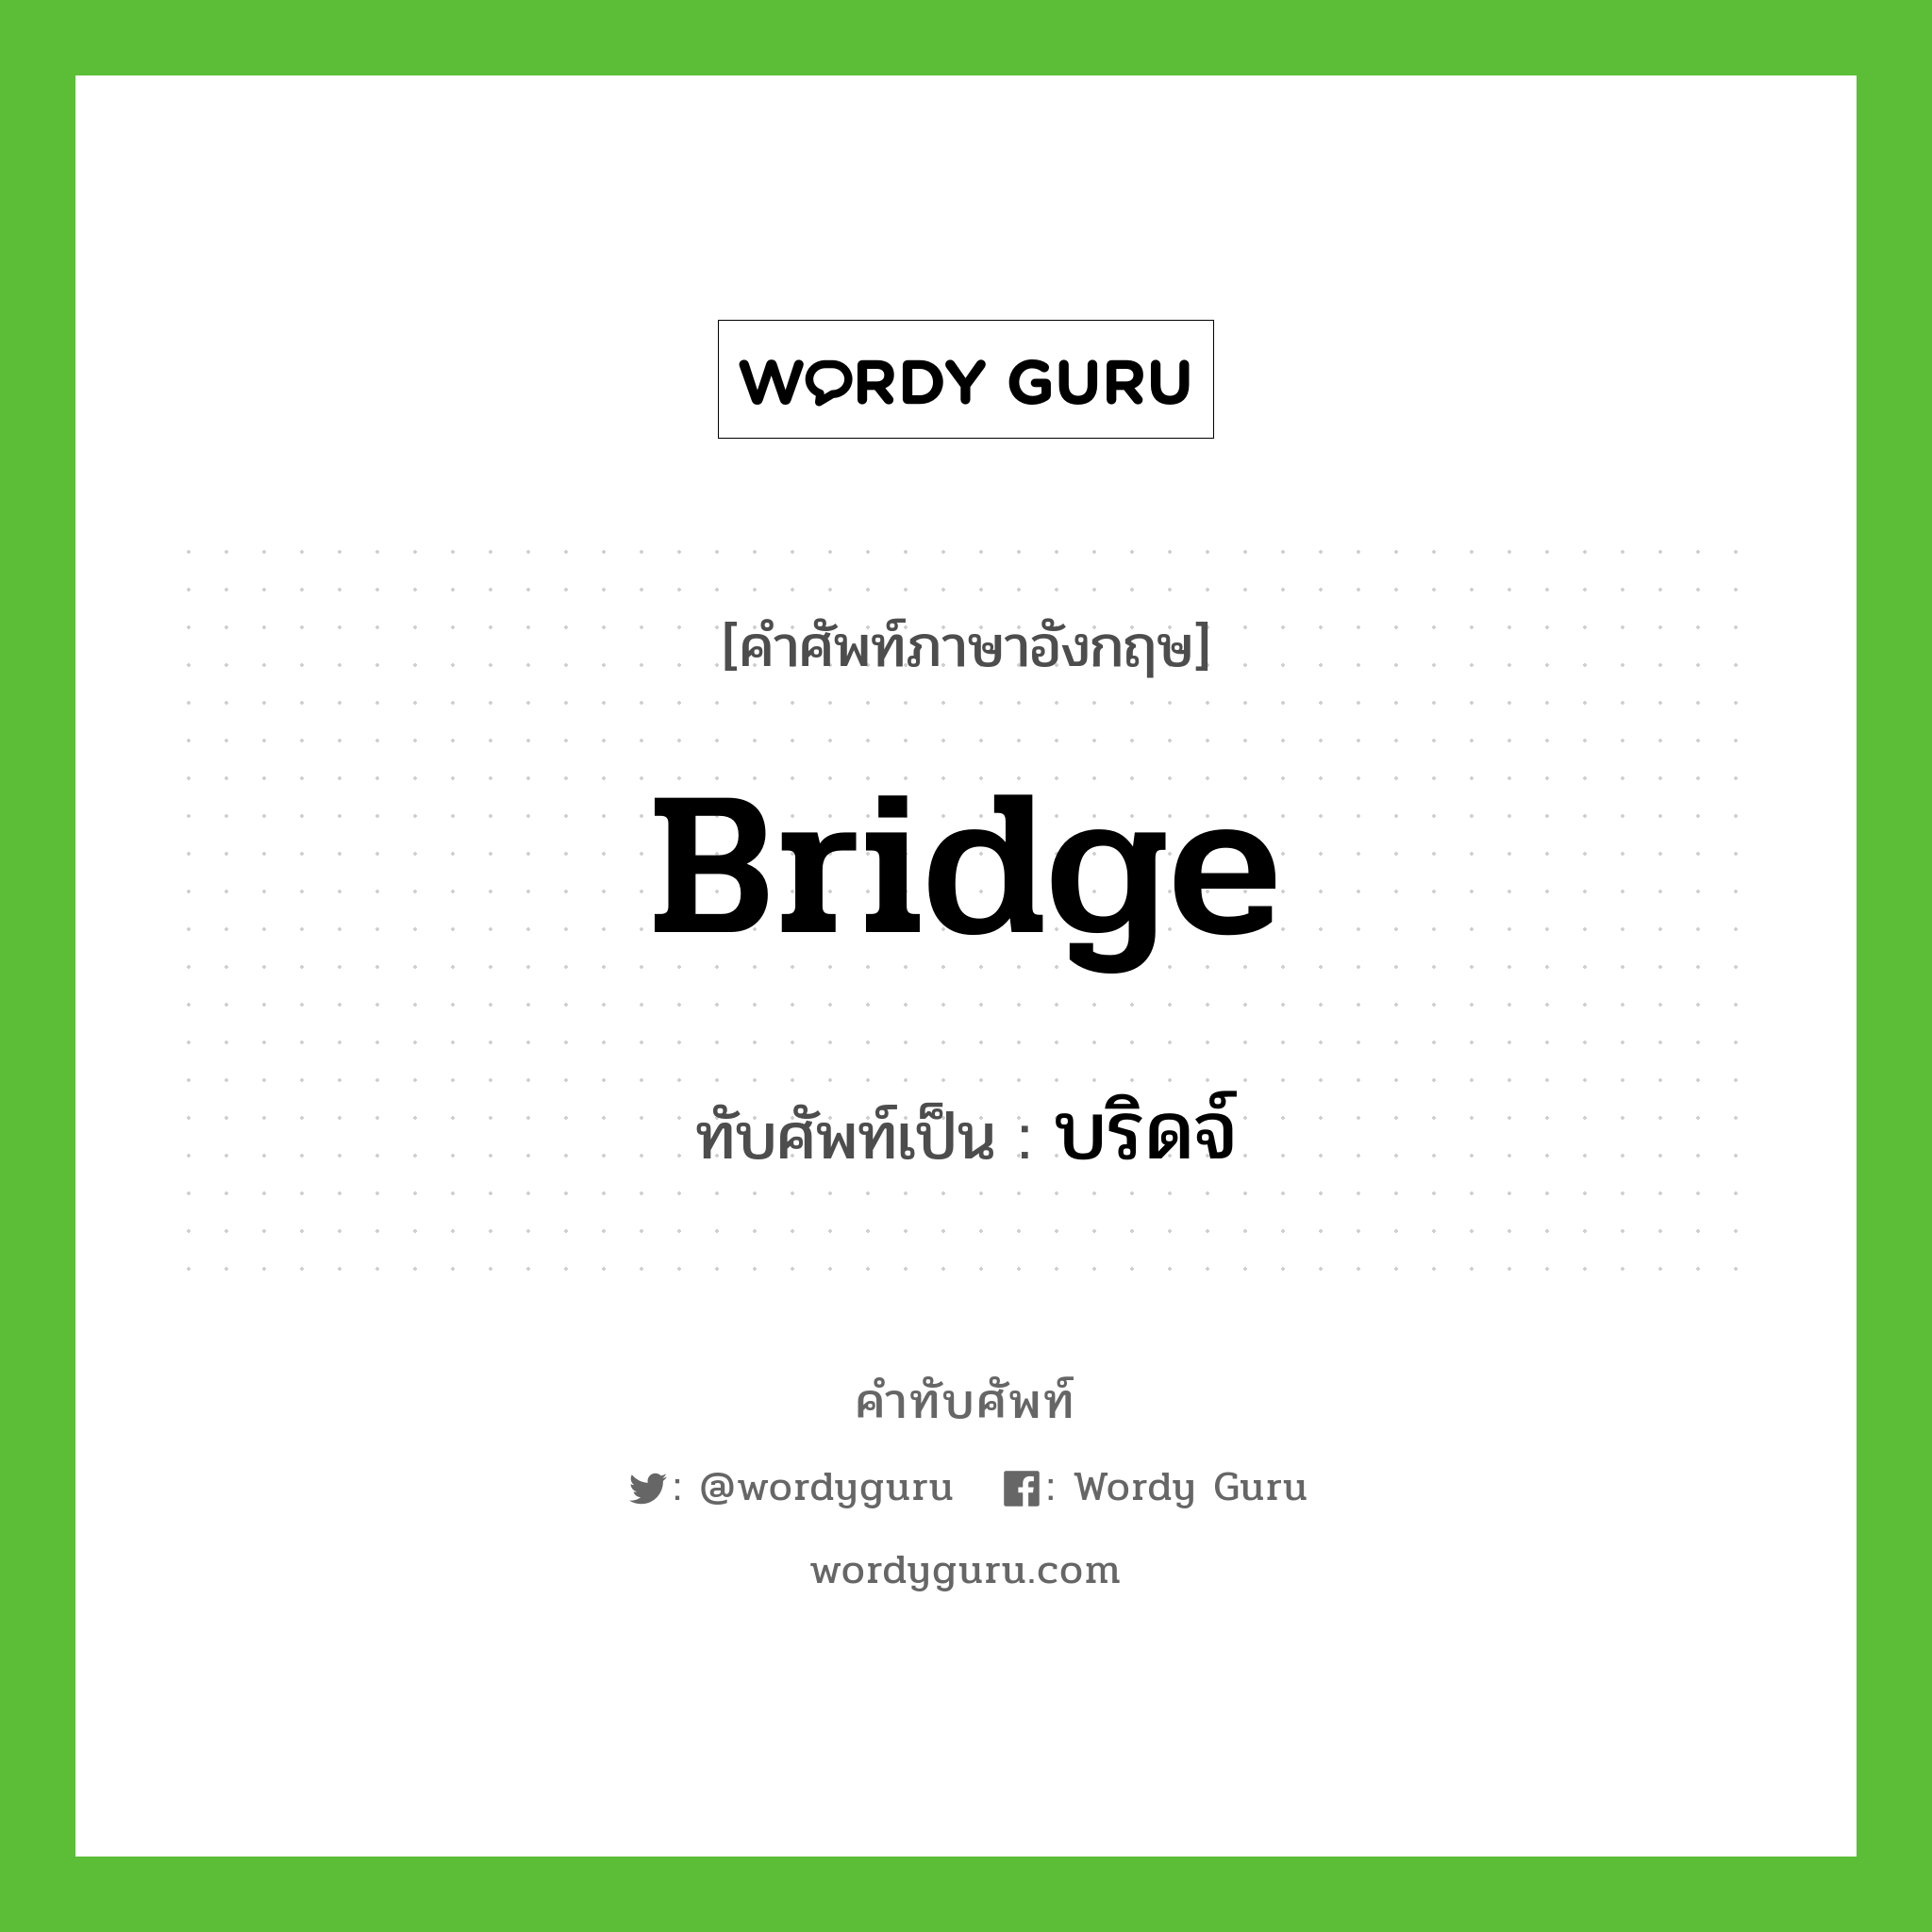 bridge เขียนเป็นคำไทยว่าอะไร?, คำศัพท์ภาษาอังกฤษ bridge ทับศัพท์เป็น บริดจ์